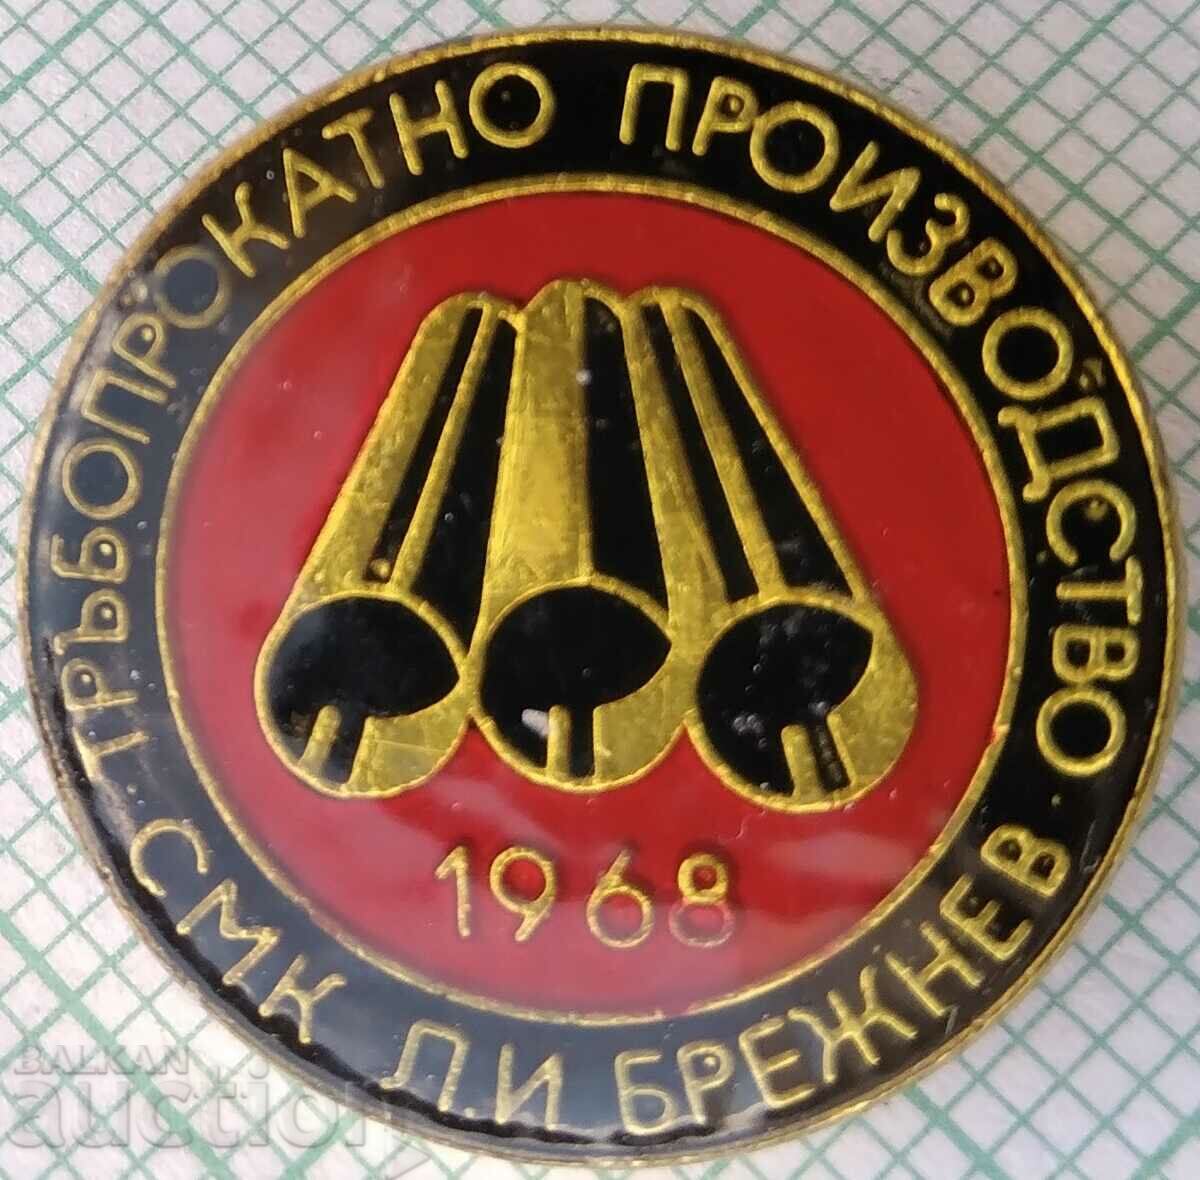 15664 Εργοστάσιο παραγωγής έλασης σωλήνων Kremikovtsi 1968